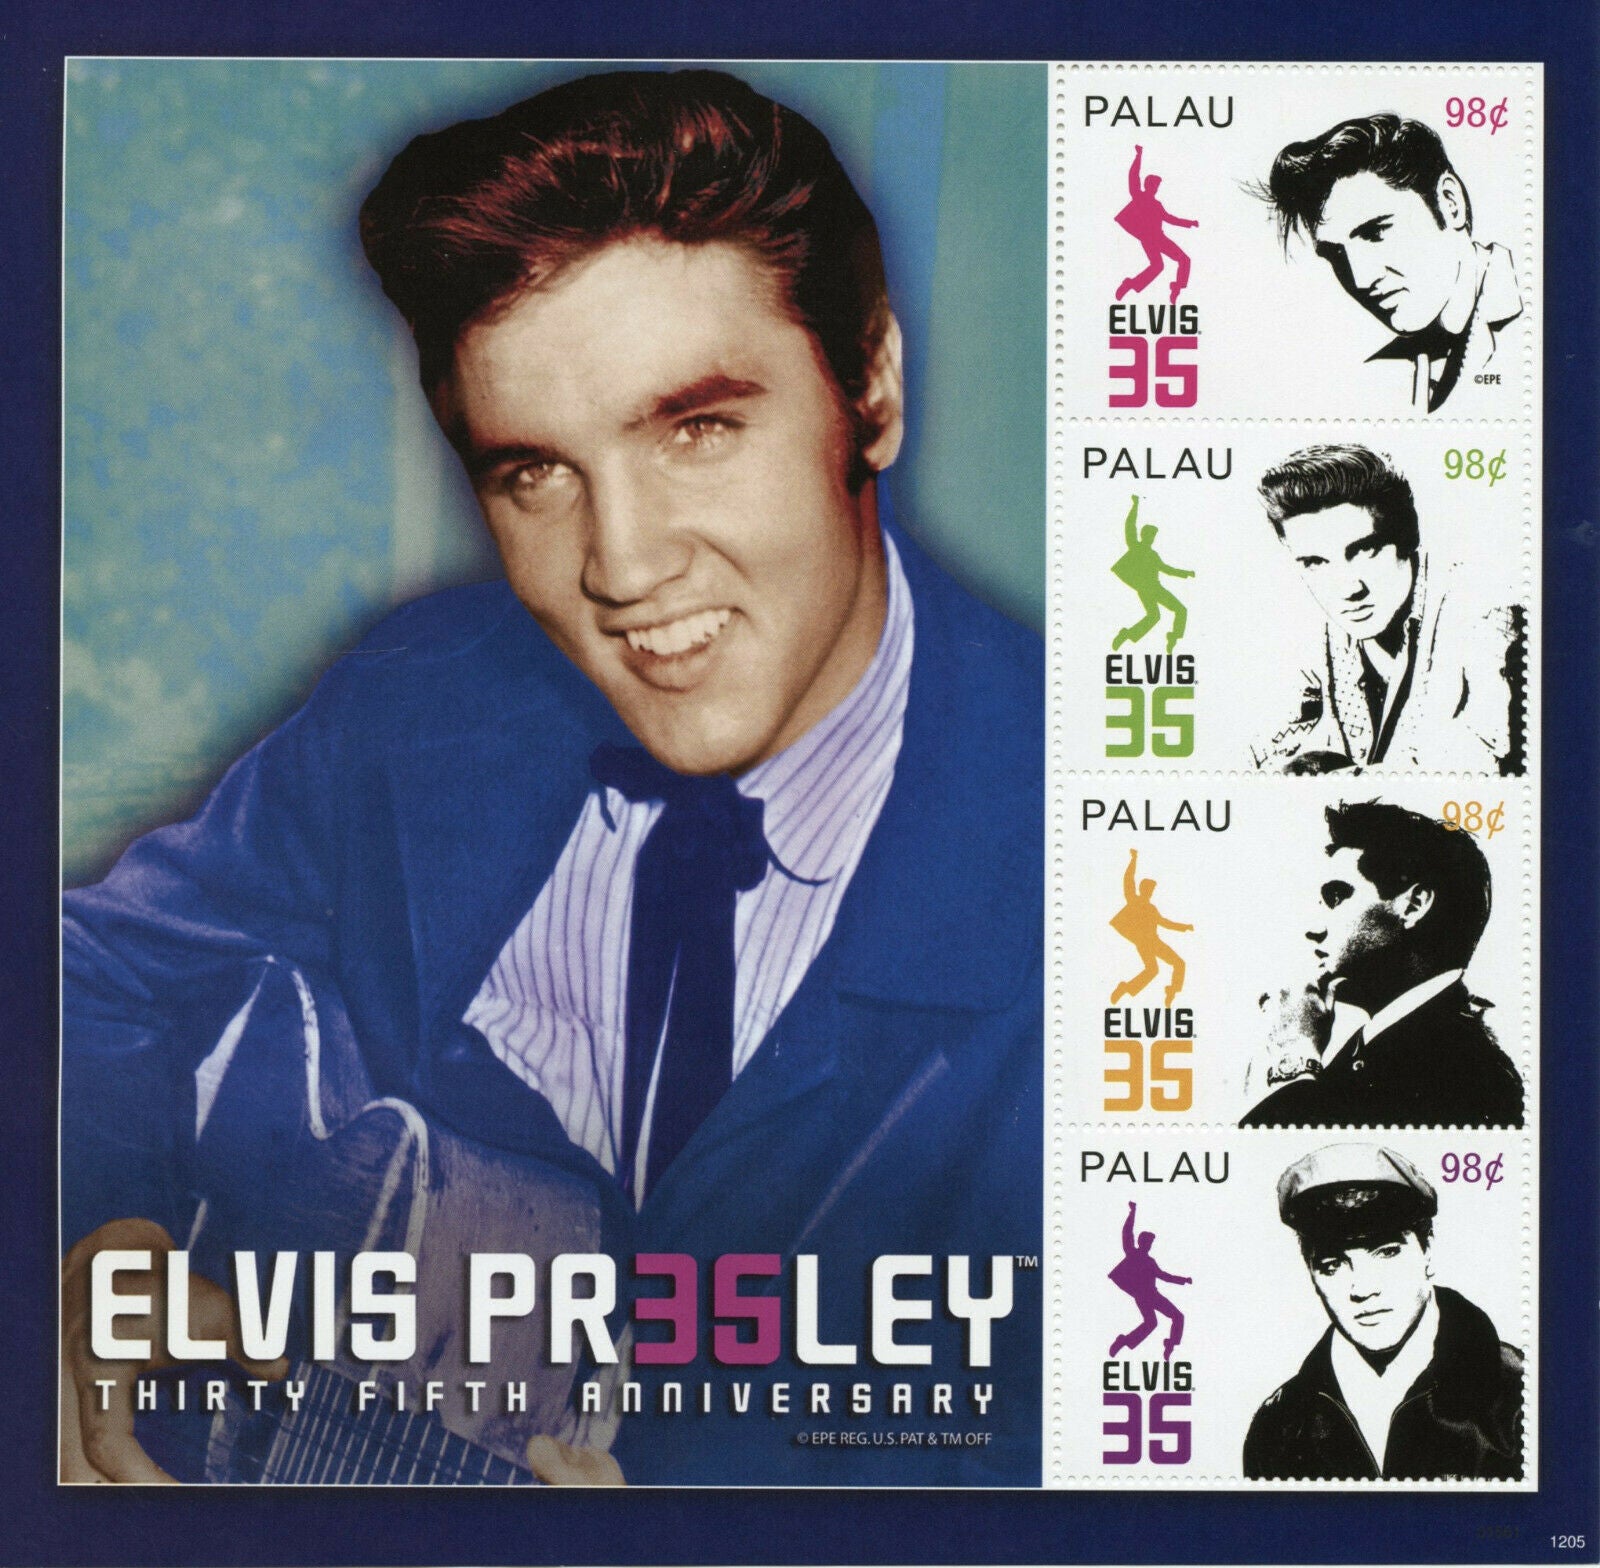 Palau Elvis Presley Stamps 2012 MNH King of Rock Roll Music People 4v M/S I